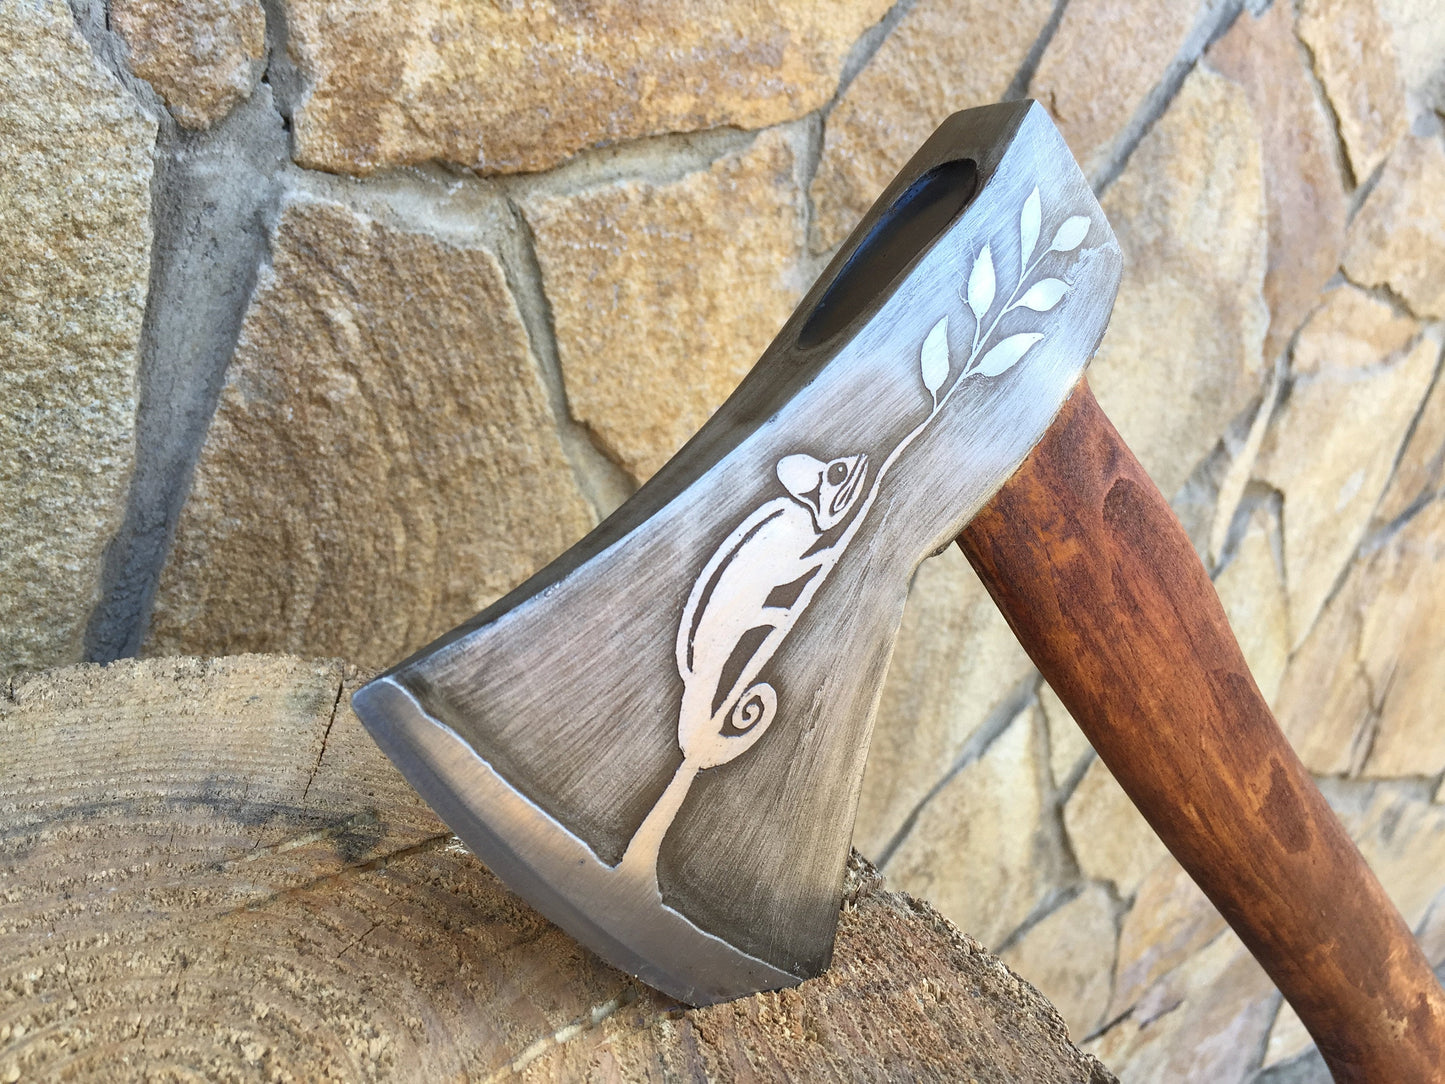 Viking hatchet, viking axe, tomahawk, mens gifts, medieval axe, iron gift for him, chameleon, viking camp kit, viking gifts, iron gifts, axe